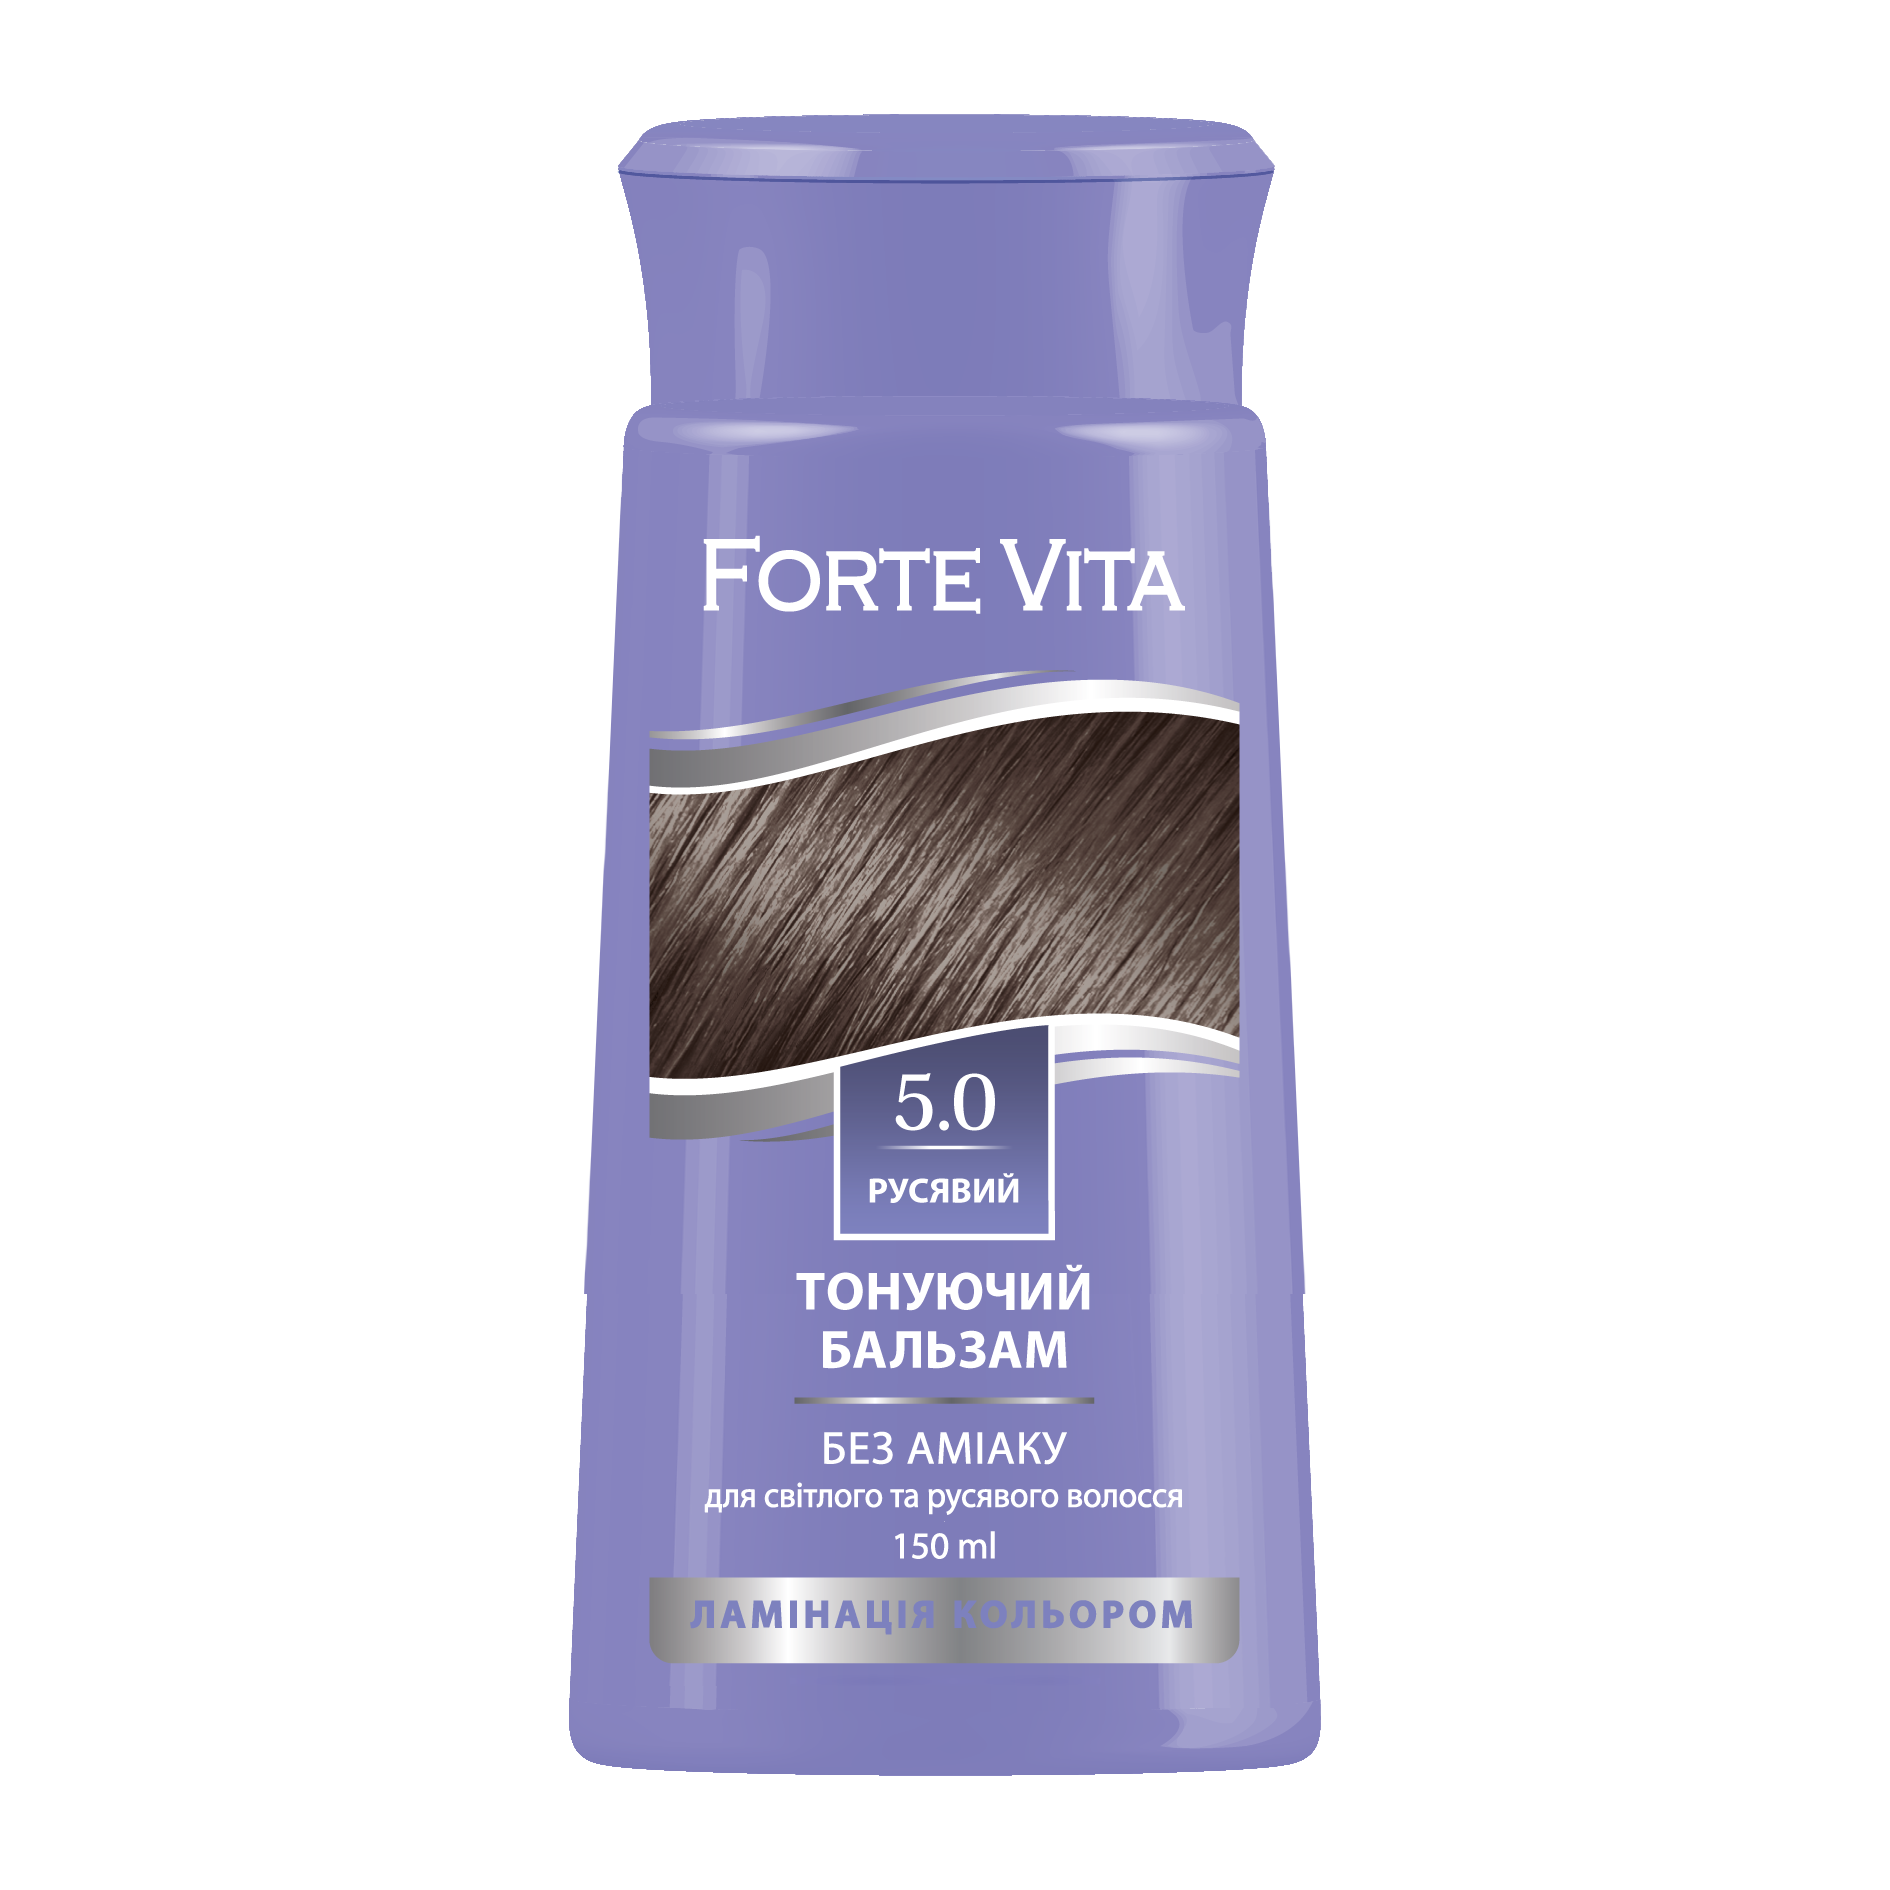 Бальзам тонуючий Forte Vita 5.0 Русявий 150 мл